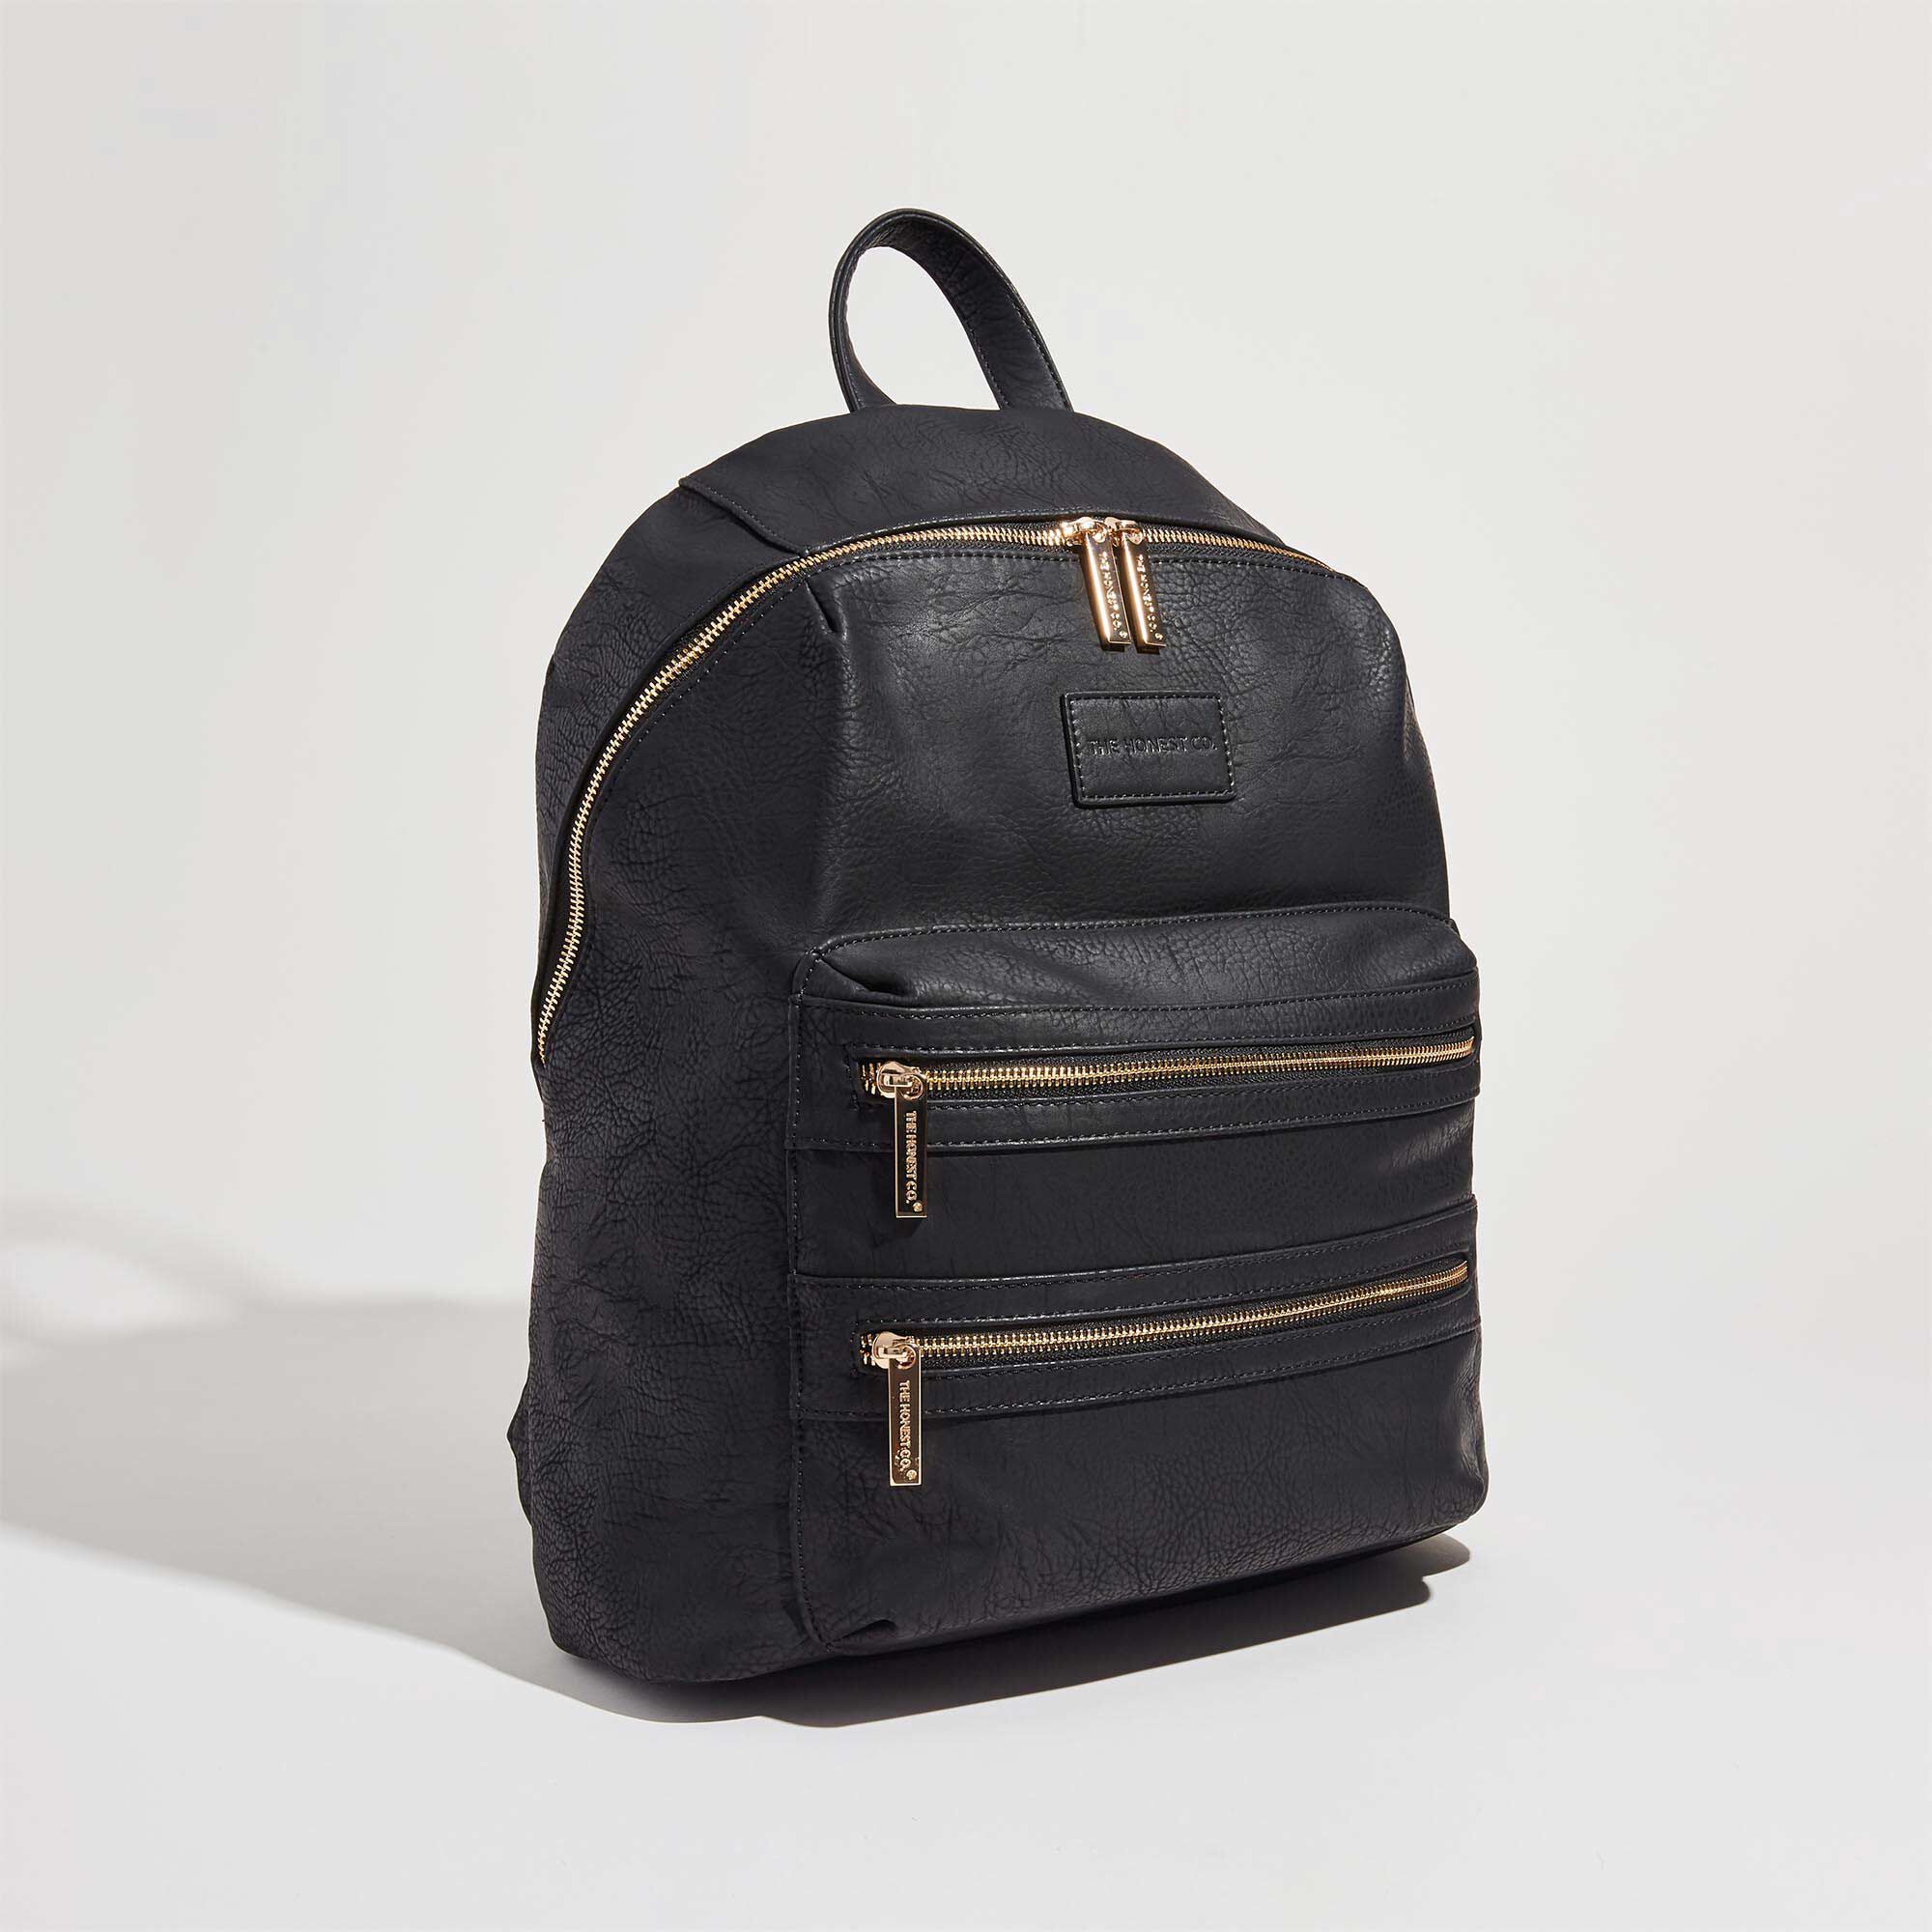 black leather backpack front shot